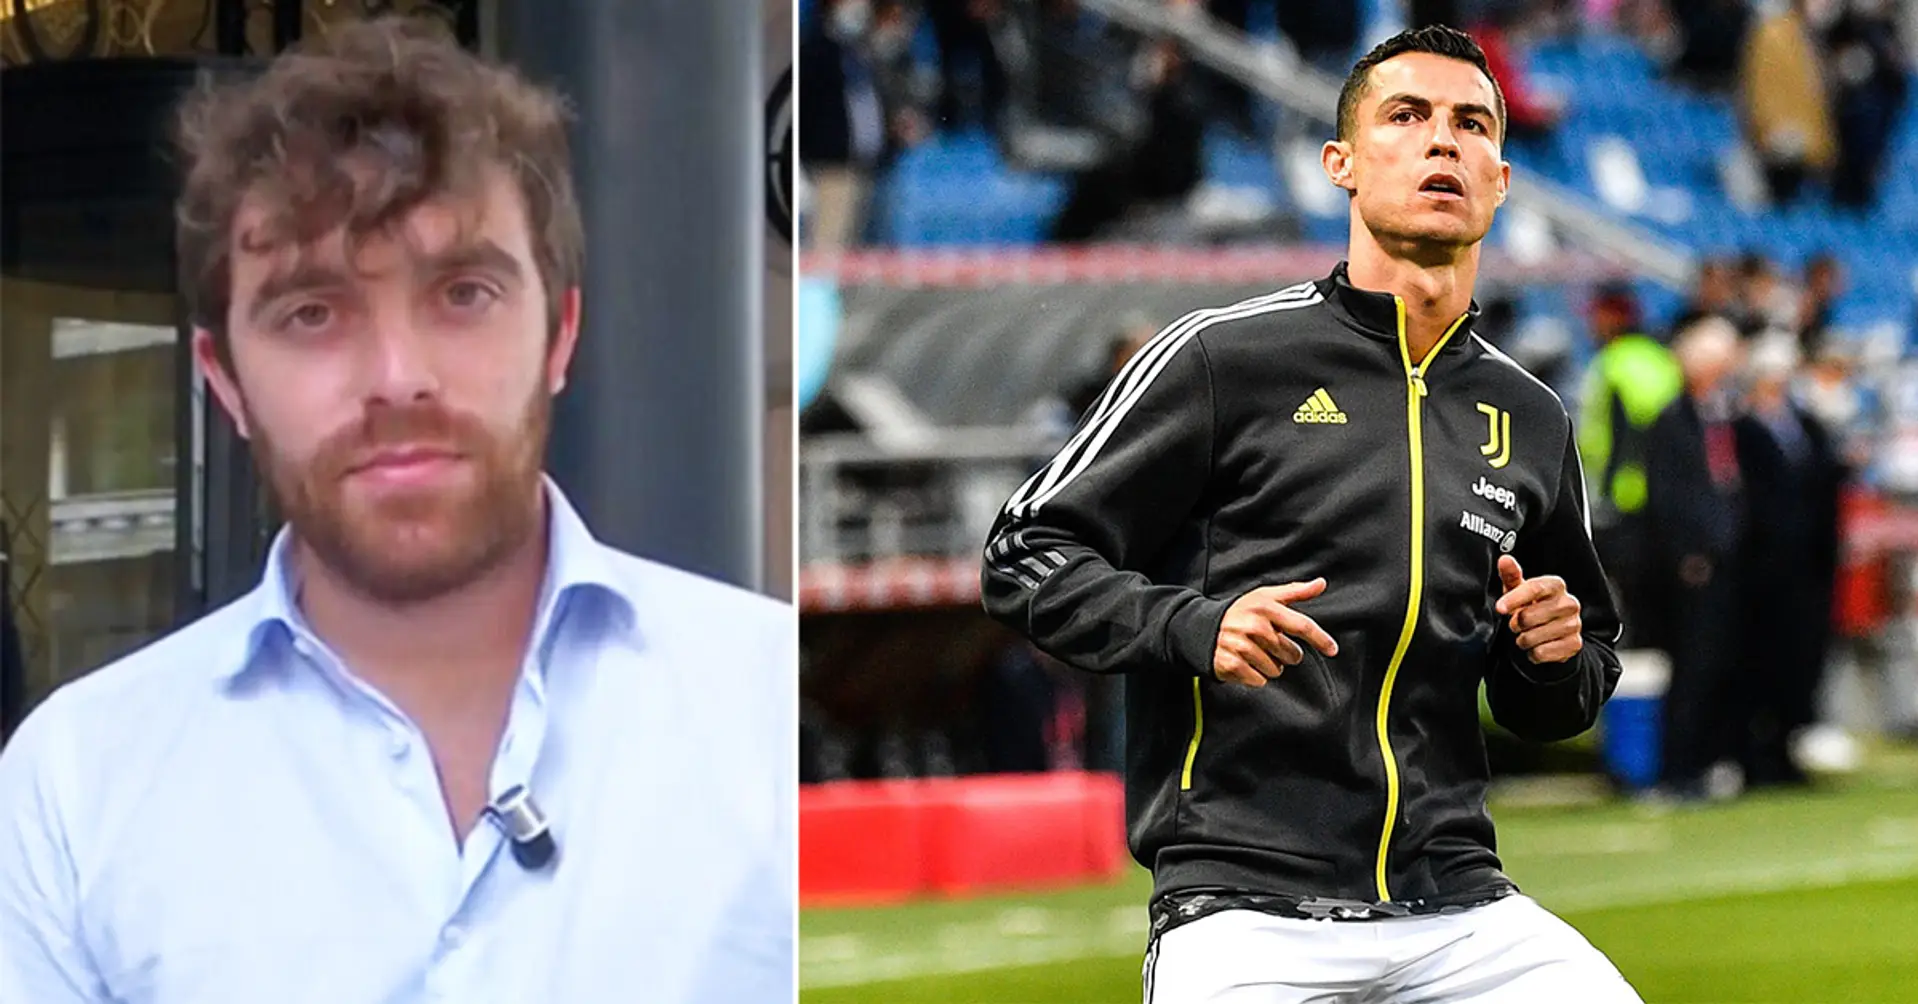 NOUVEAU: Cristiano Ronaldo veut quitter Turin, demande à être mis sur le banc par la Juve (Fabrizio Romano)